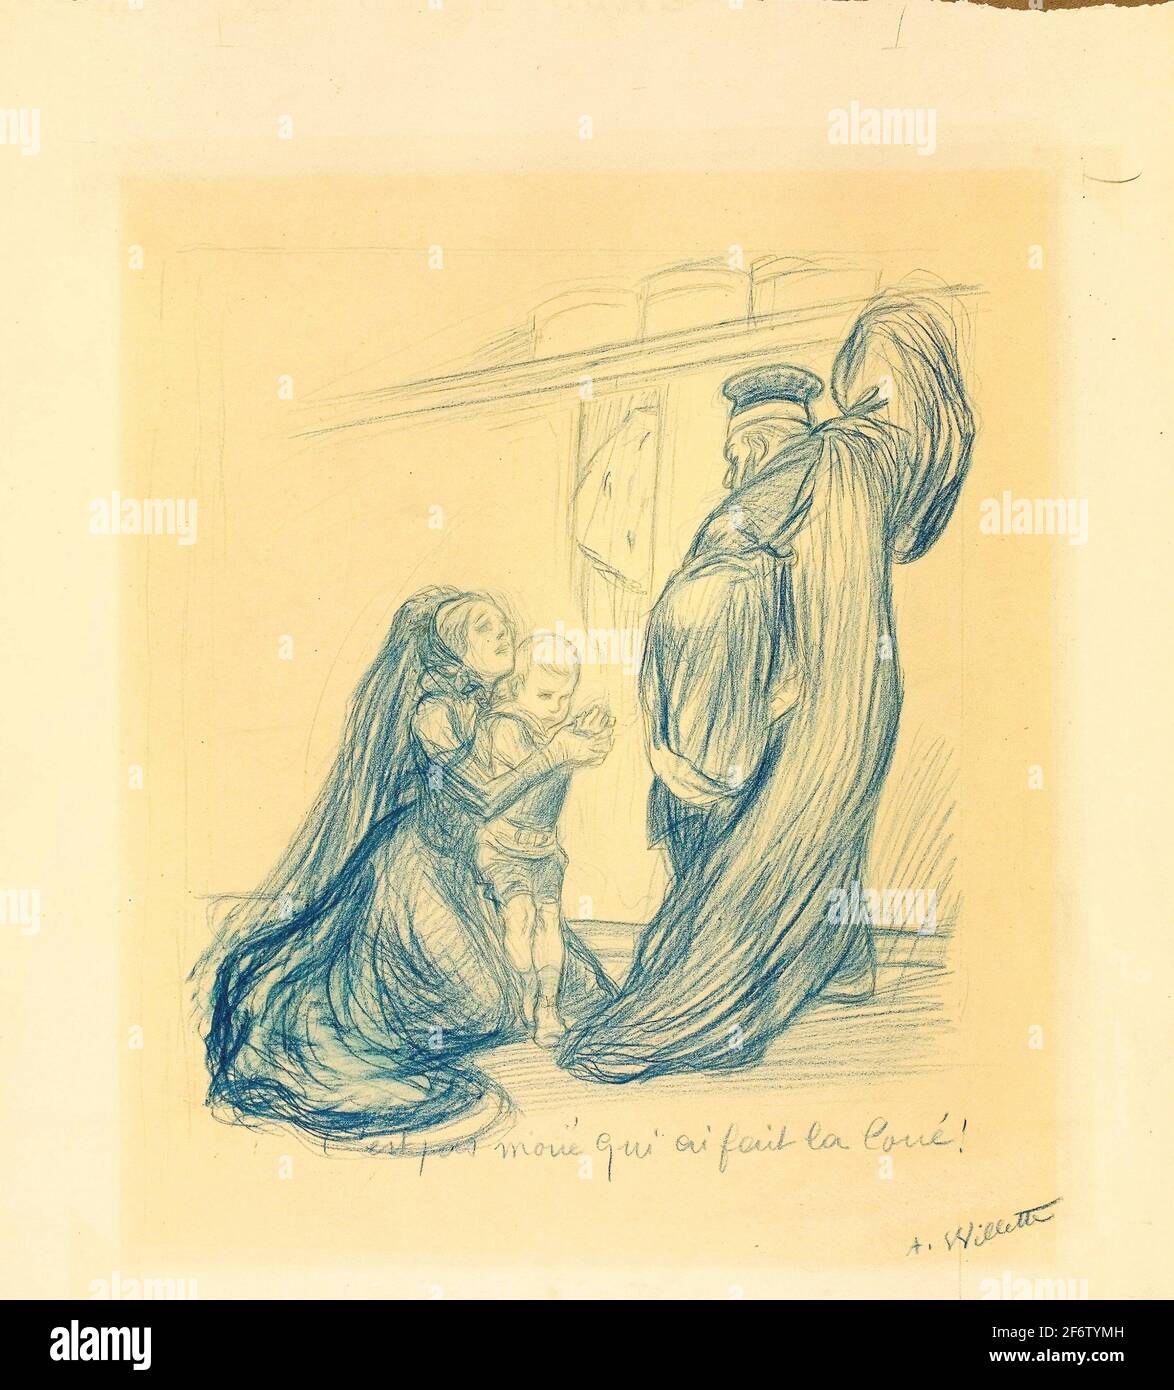 Autor: Adolphe Lon Willette. Frau bittet einen Mann - Adolphe Willette Französisch, 1857-1926. Blauer Buntstift, über Graphit, auf cremefarbenem Wove-Papier Stockfoto